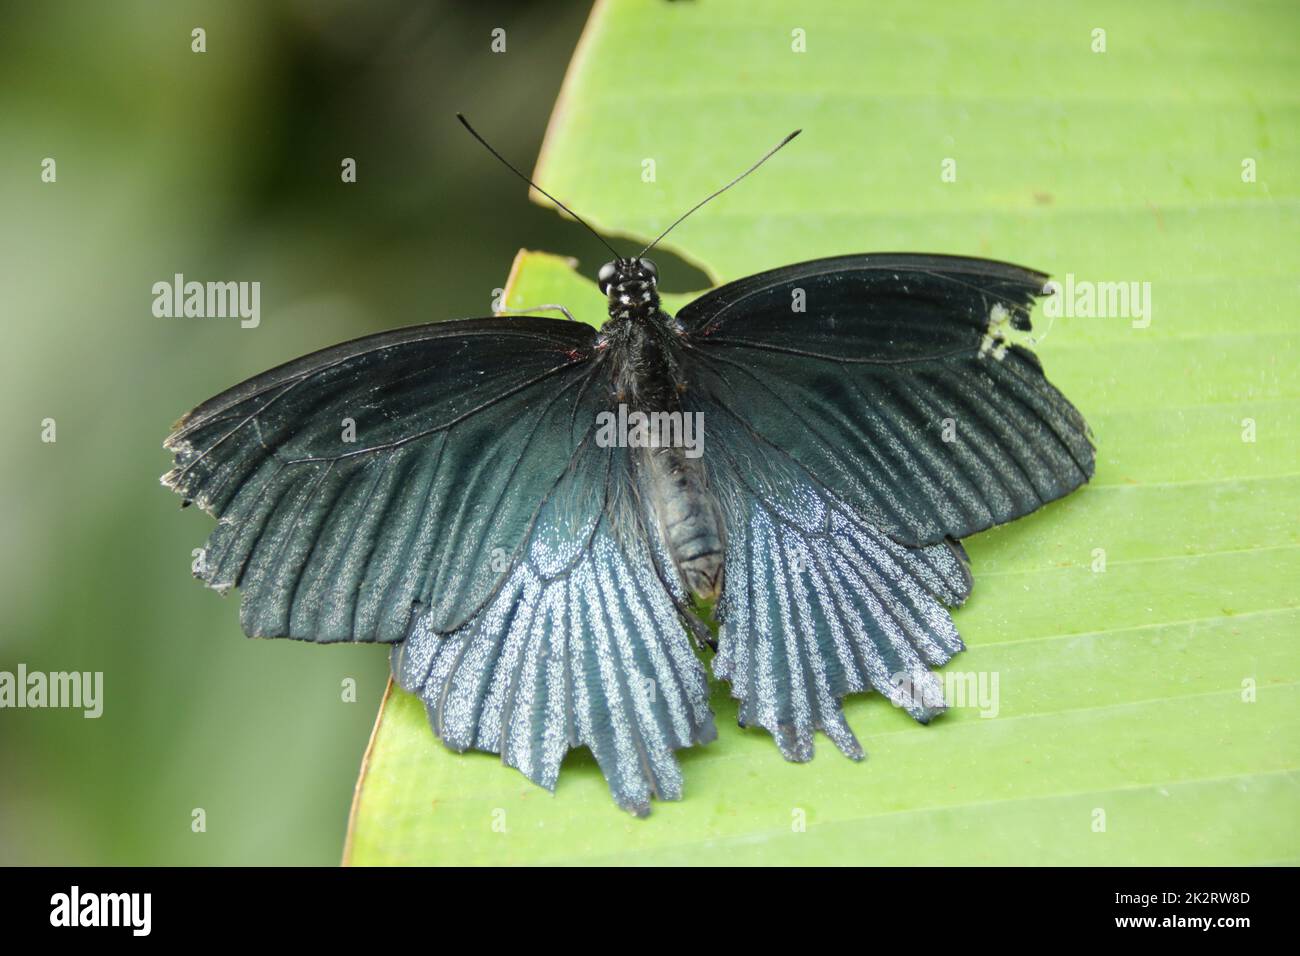 Le papillon noir est posé sur une feuille Banque D'Images